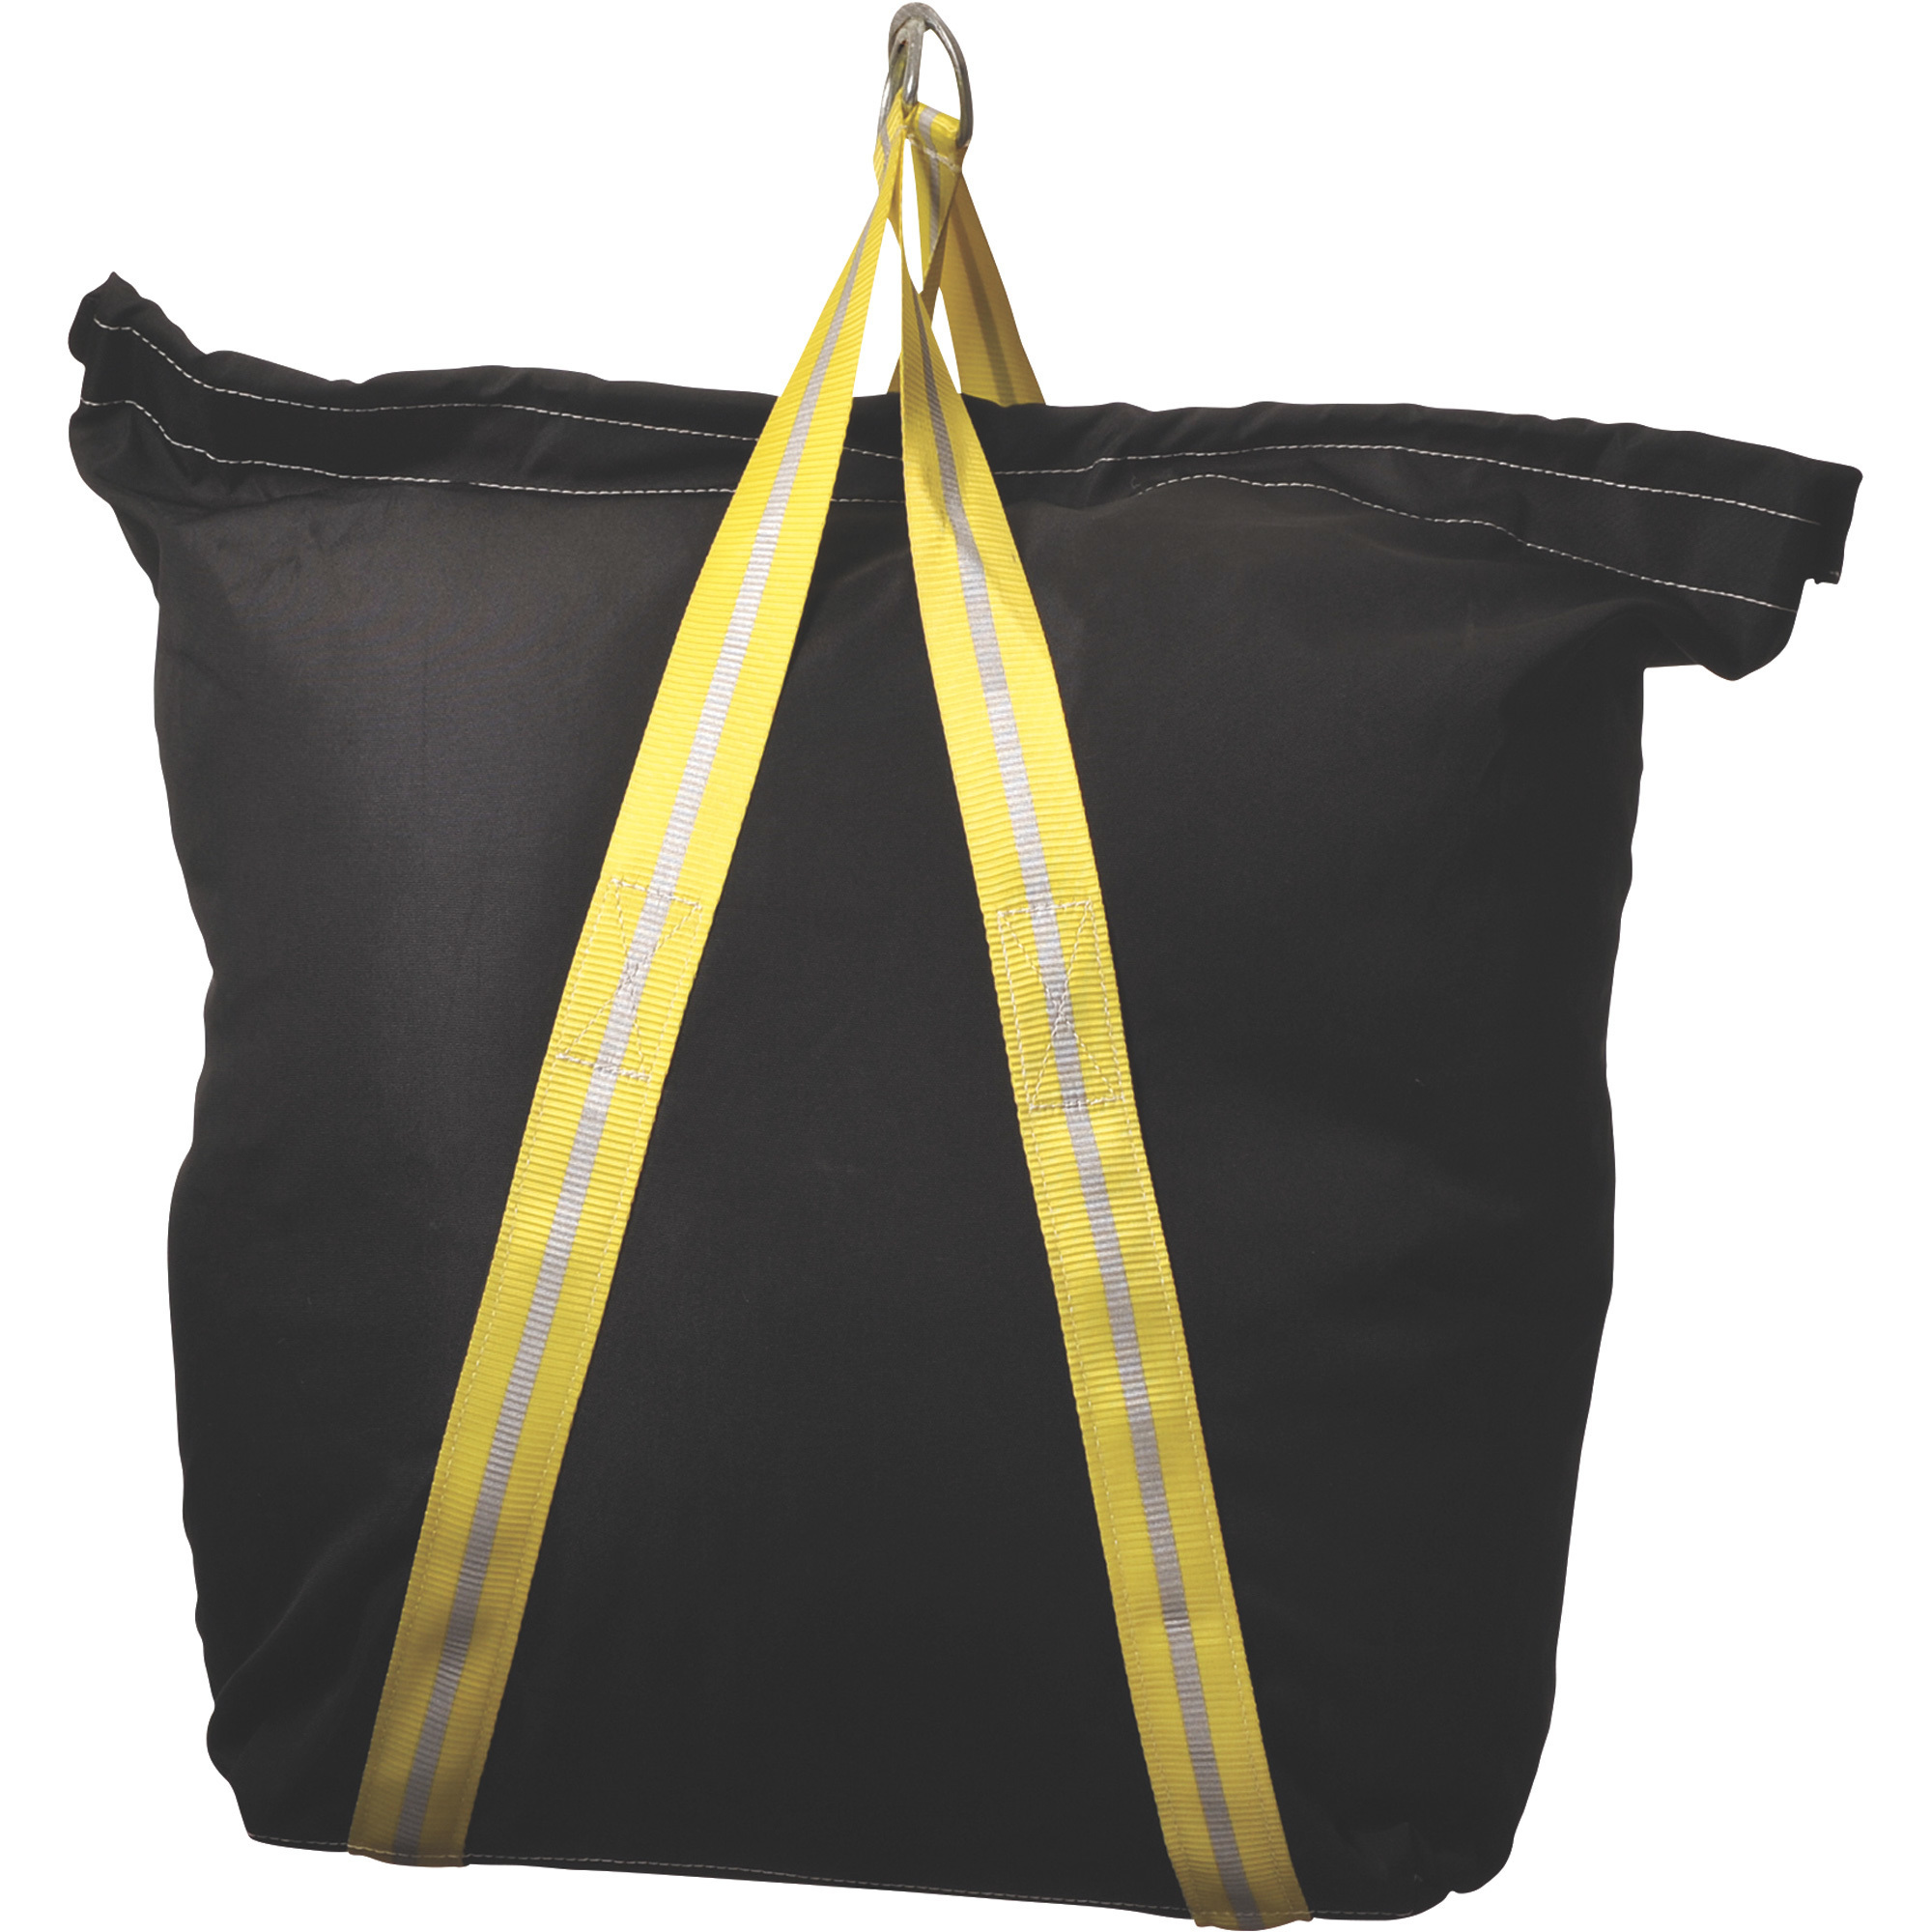 Big Boxer Industrial Canvas Lifting Tool Bag â Black, 24Inch W x 9Inch D x 30Inch H, Model 70011